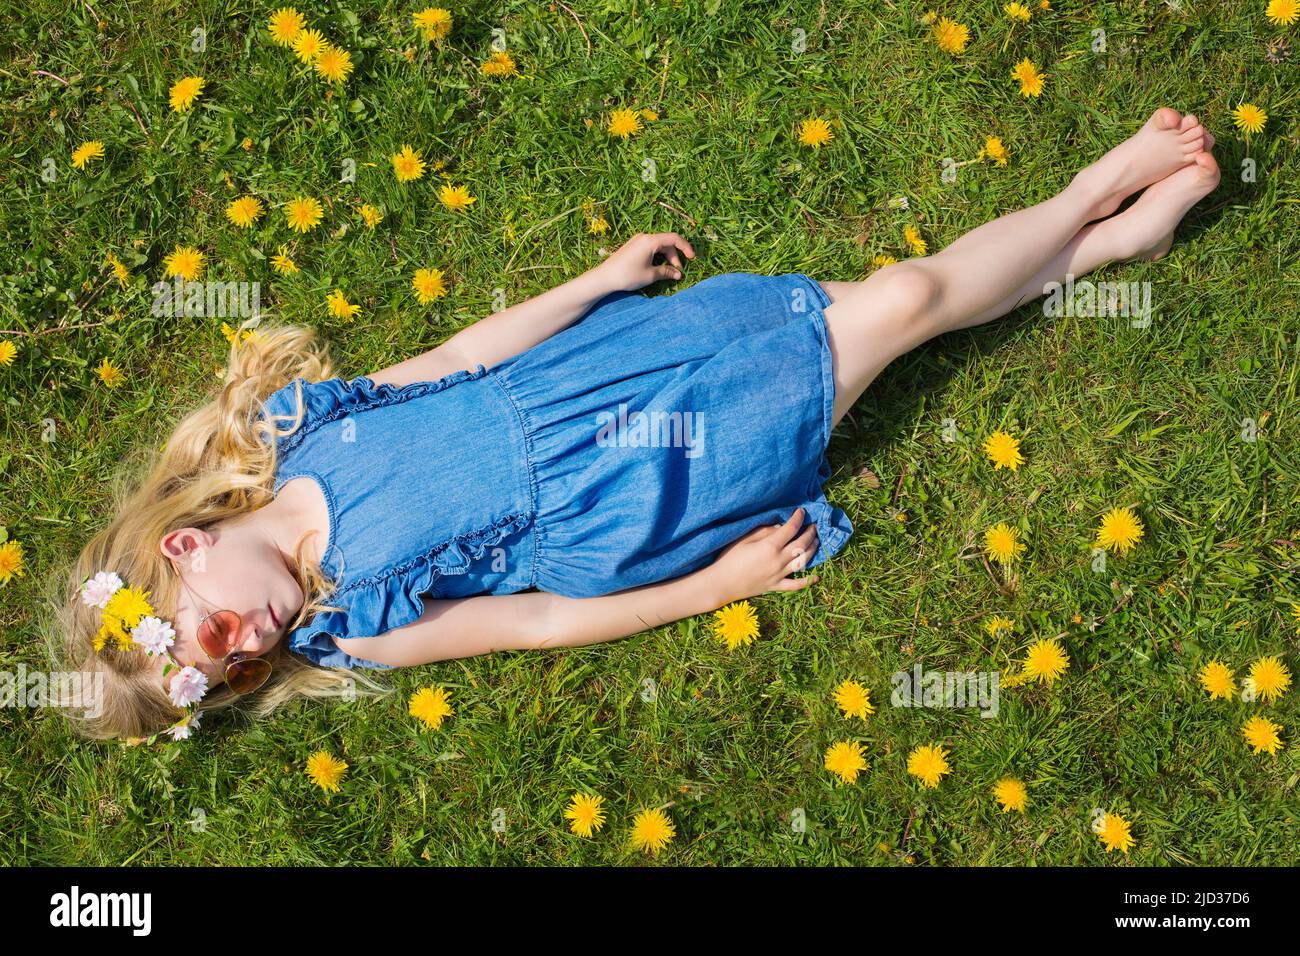 A little girl lying in a field of dandelions Stock Photo